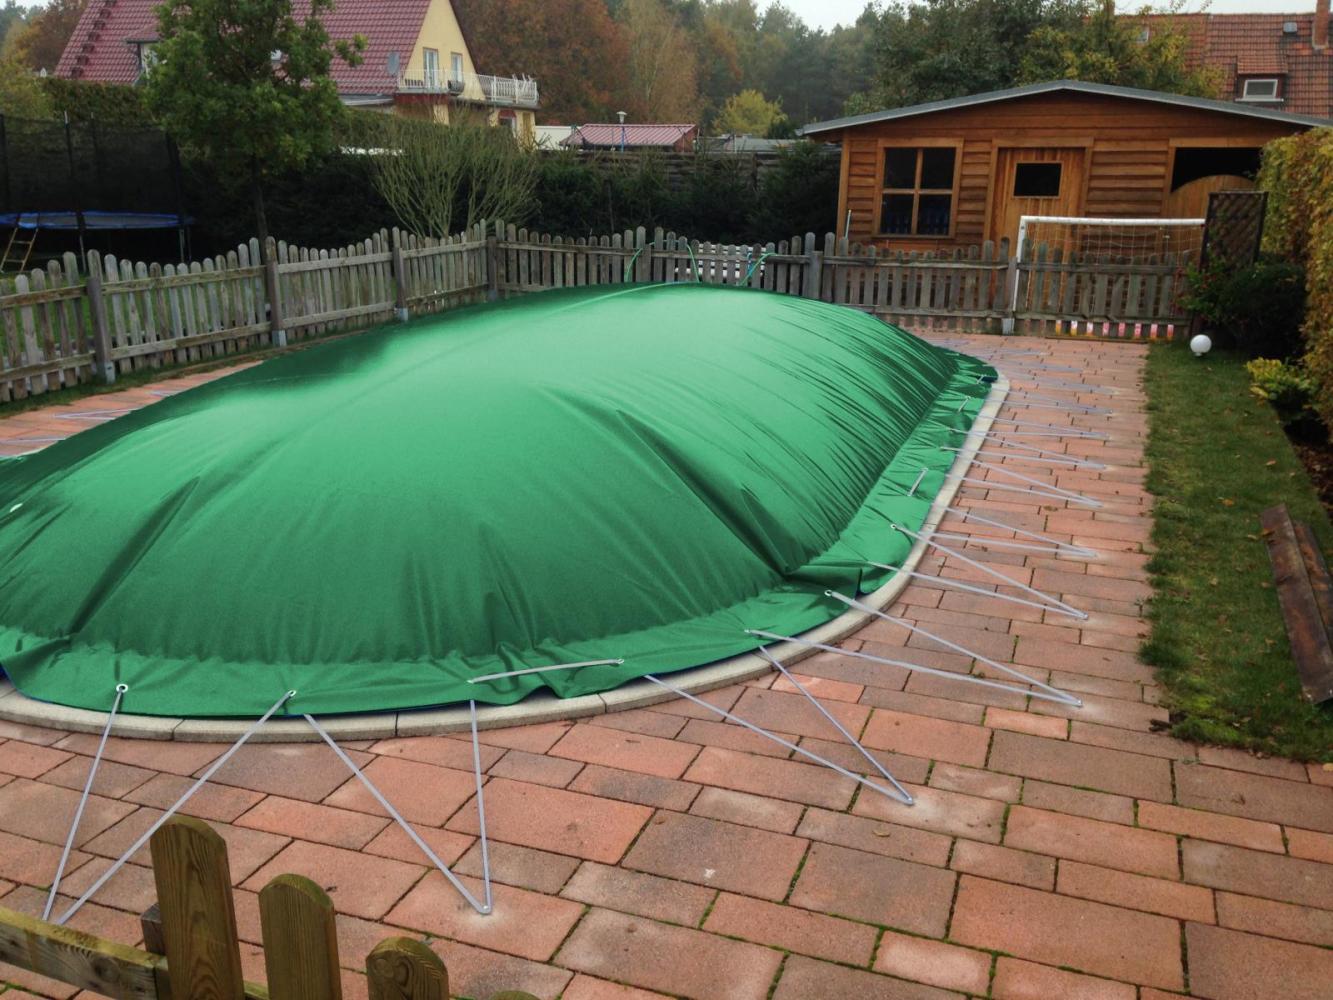 aufblasbare Winterplane für ovale Pools 7,10 x 4,20 cm Grün Bild 1